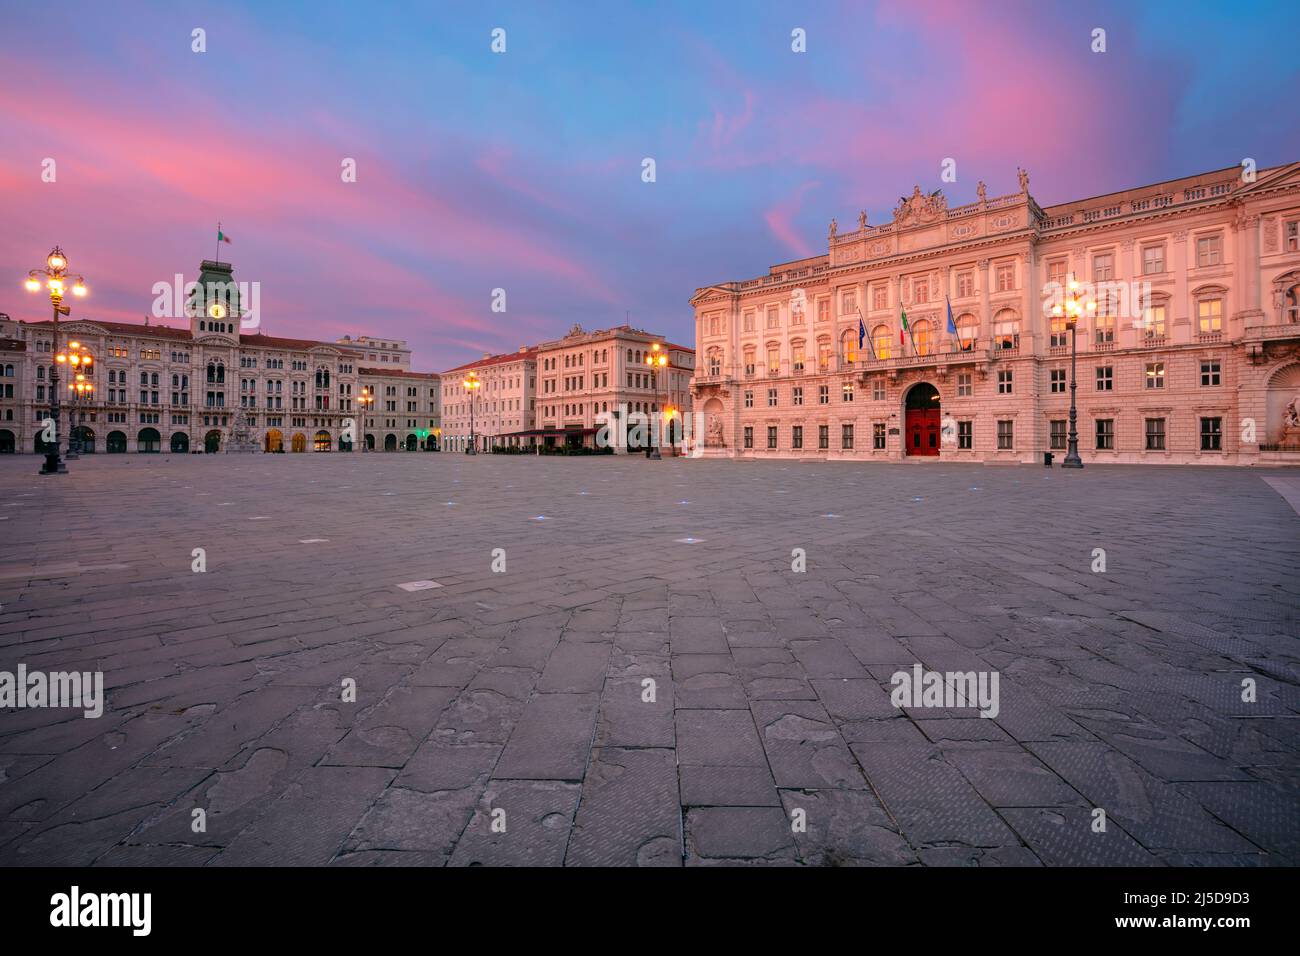 Trieste, Italie. Image de paysage urbain du centre-ville de Trieste, Italie avec place principale au lever du soleil spectaculaire. Banque D'Images